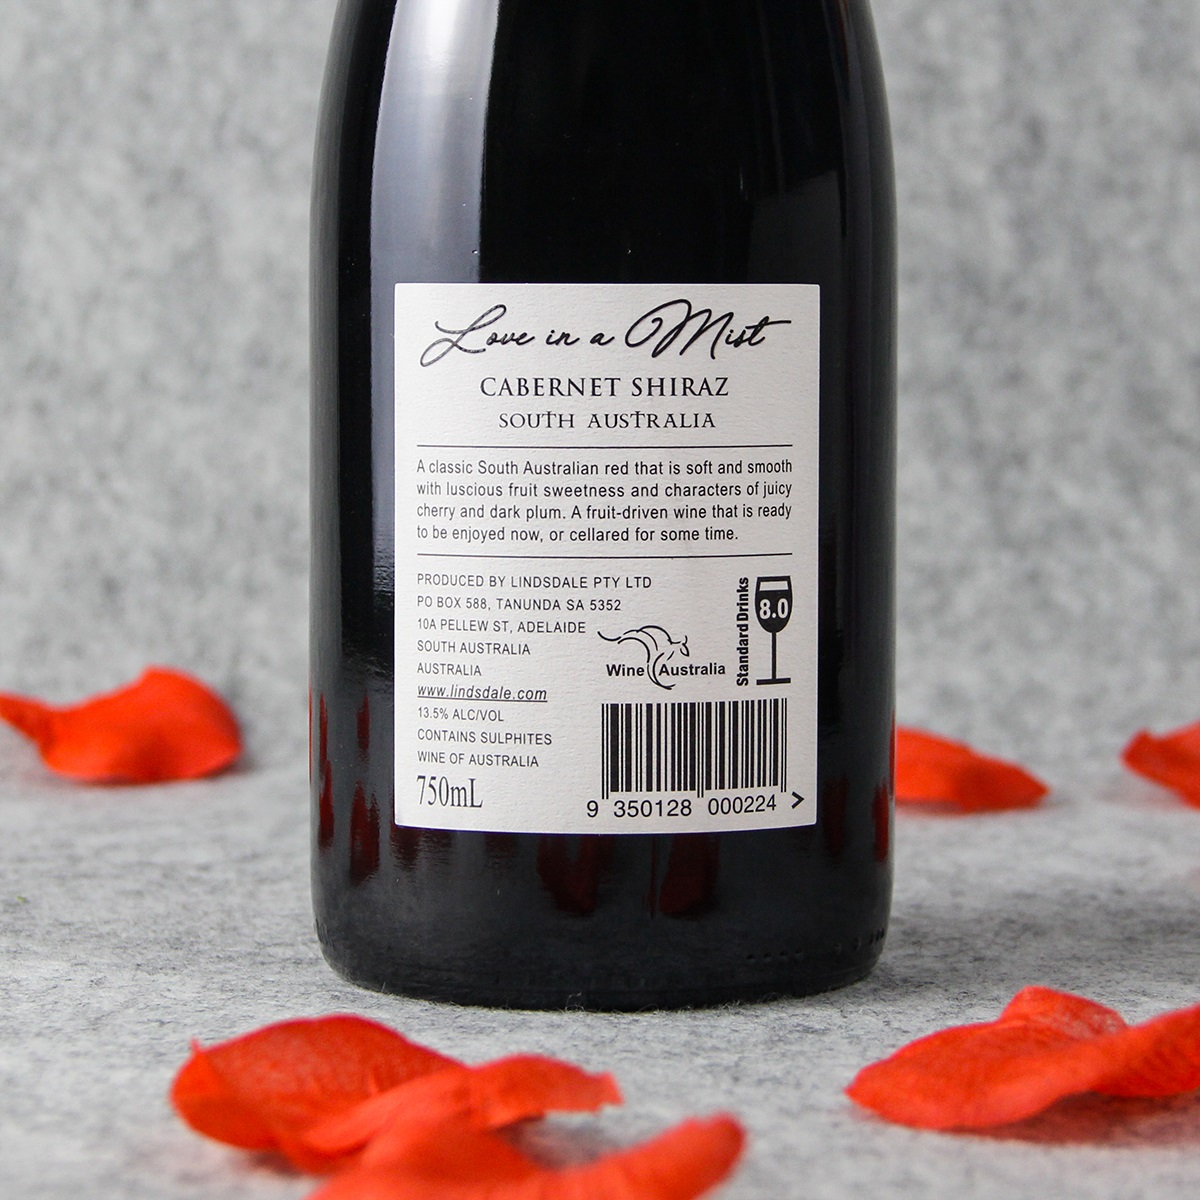  澳大利亚南澳林德菲尔德迷雾系列赤霞珠西拉干红葡萄酒红酒